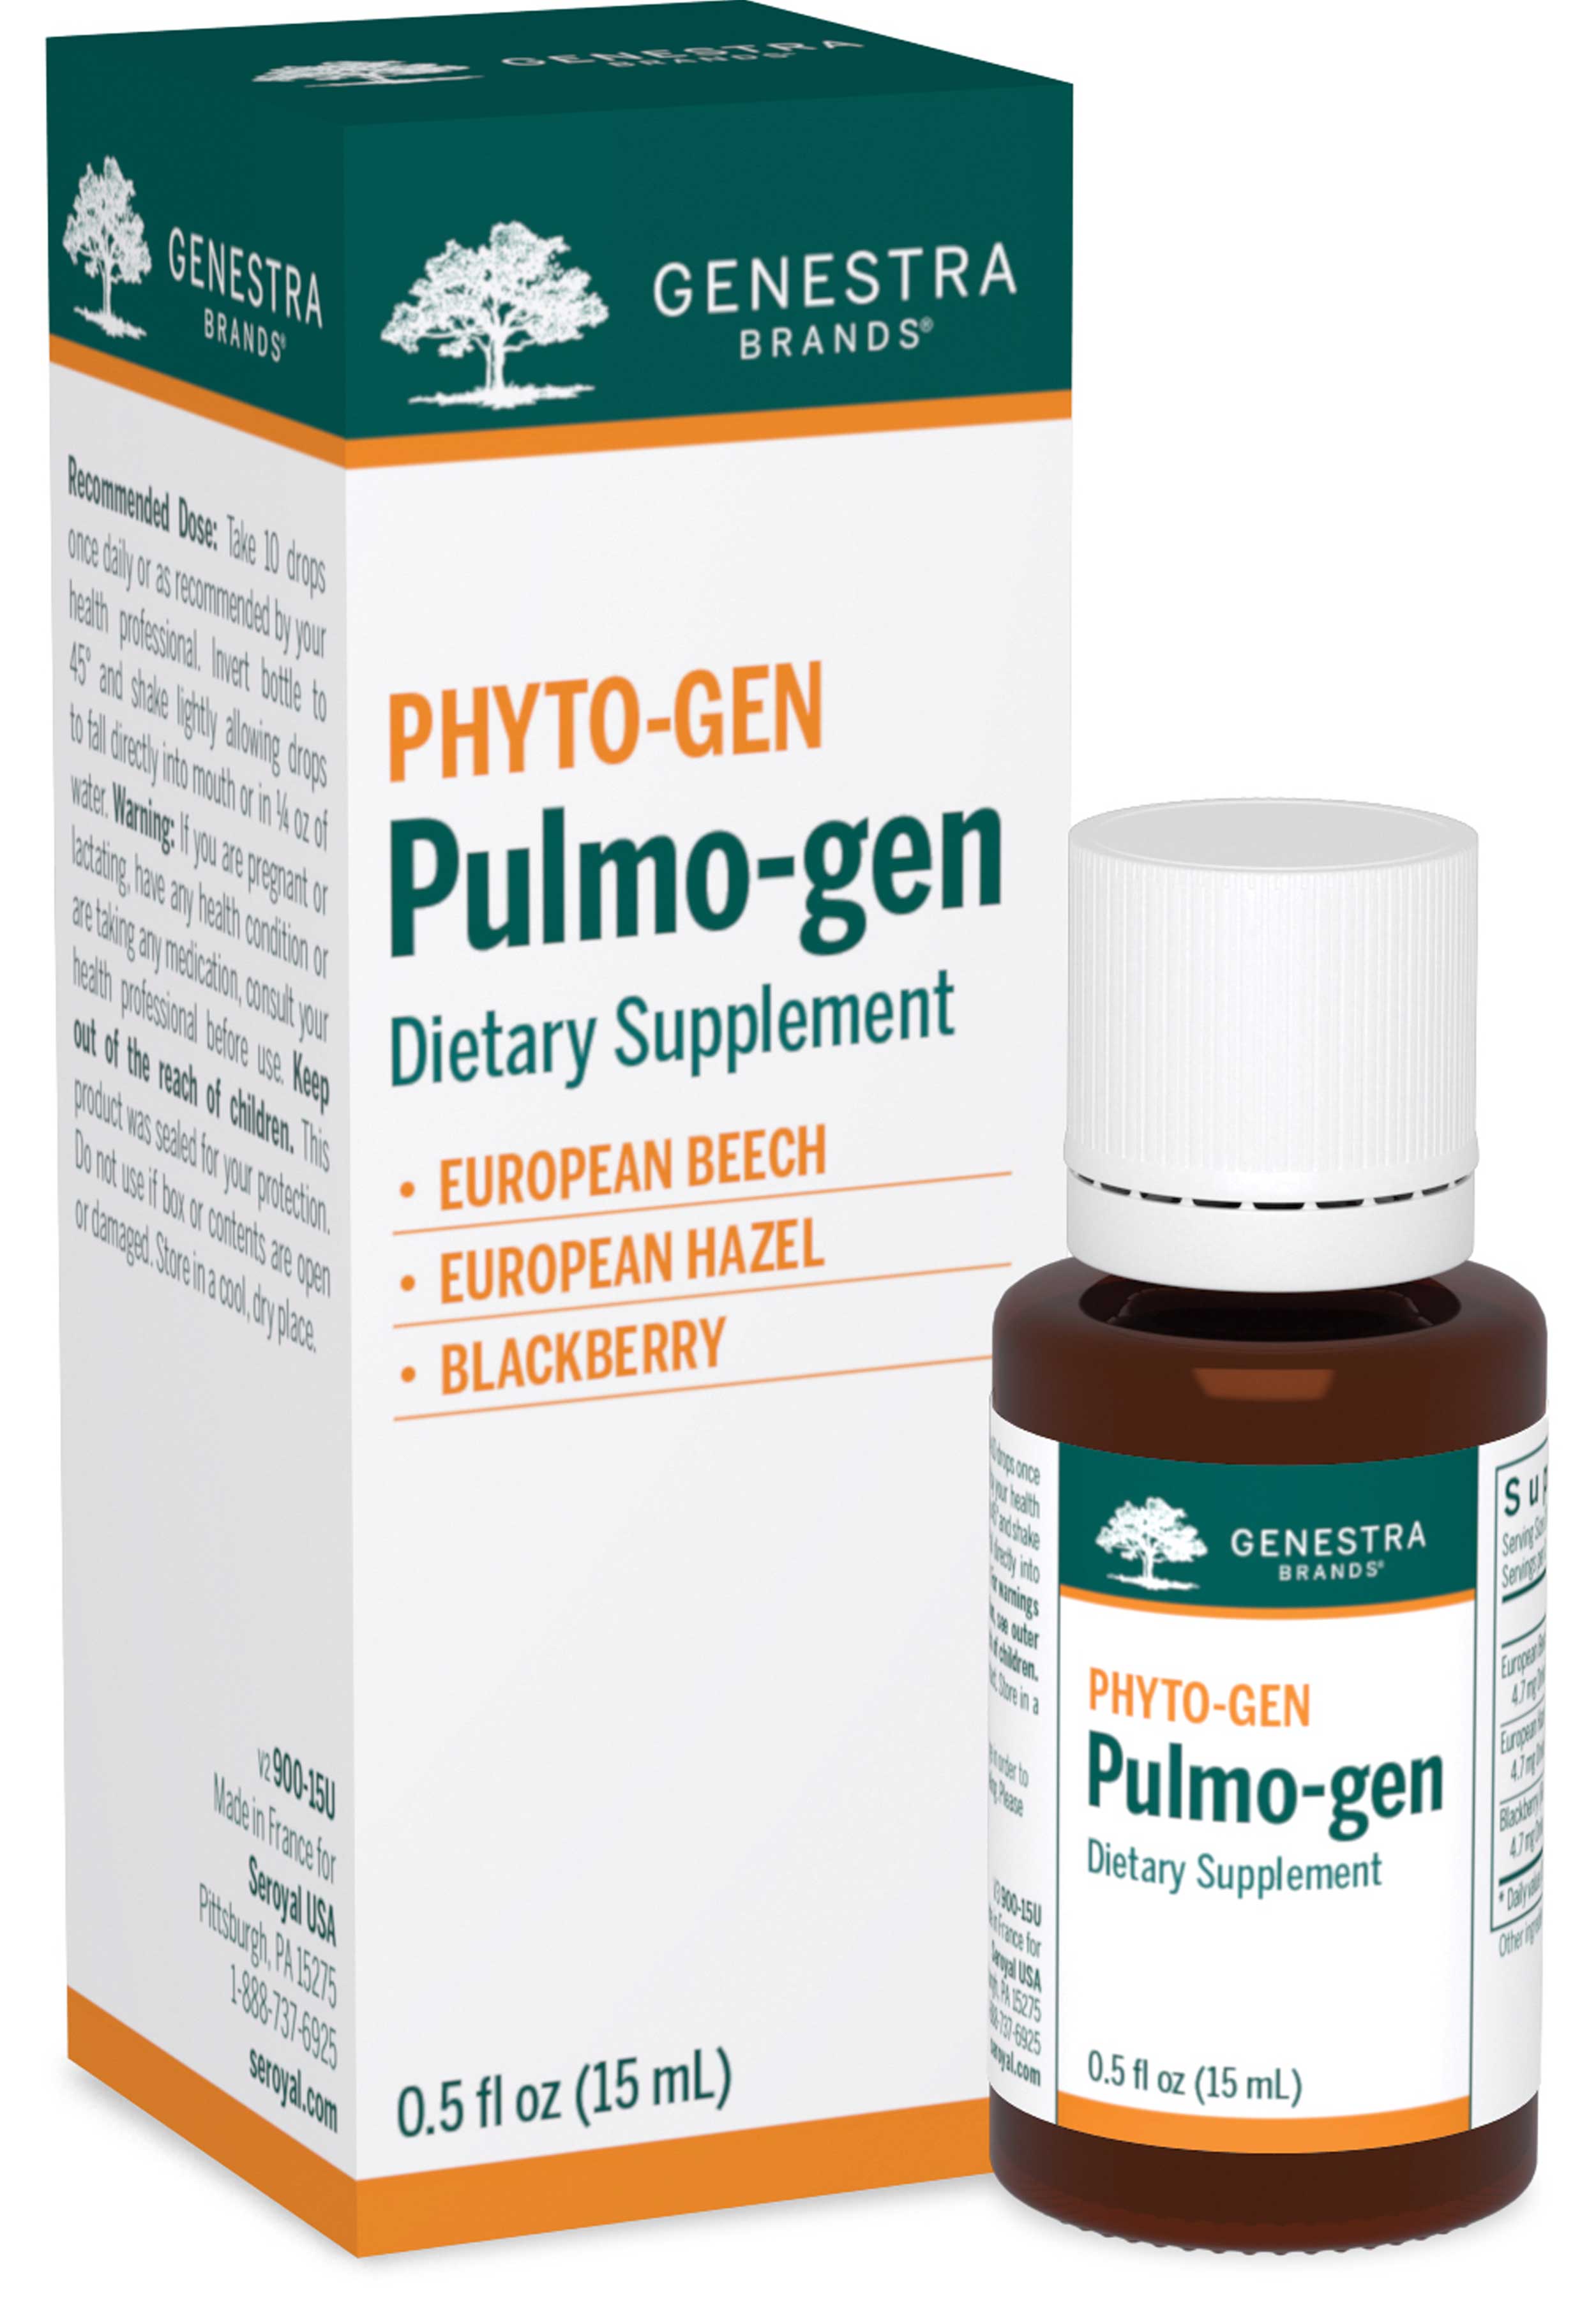 Genestra Brands Pulmo-gen